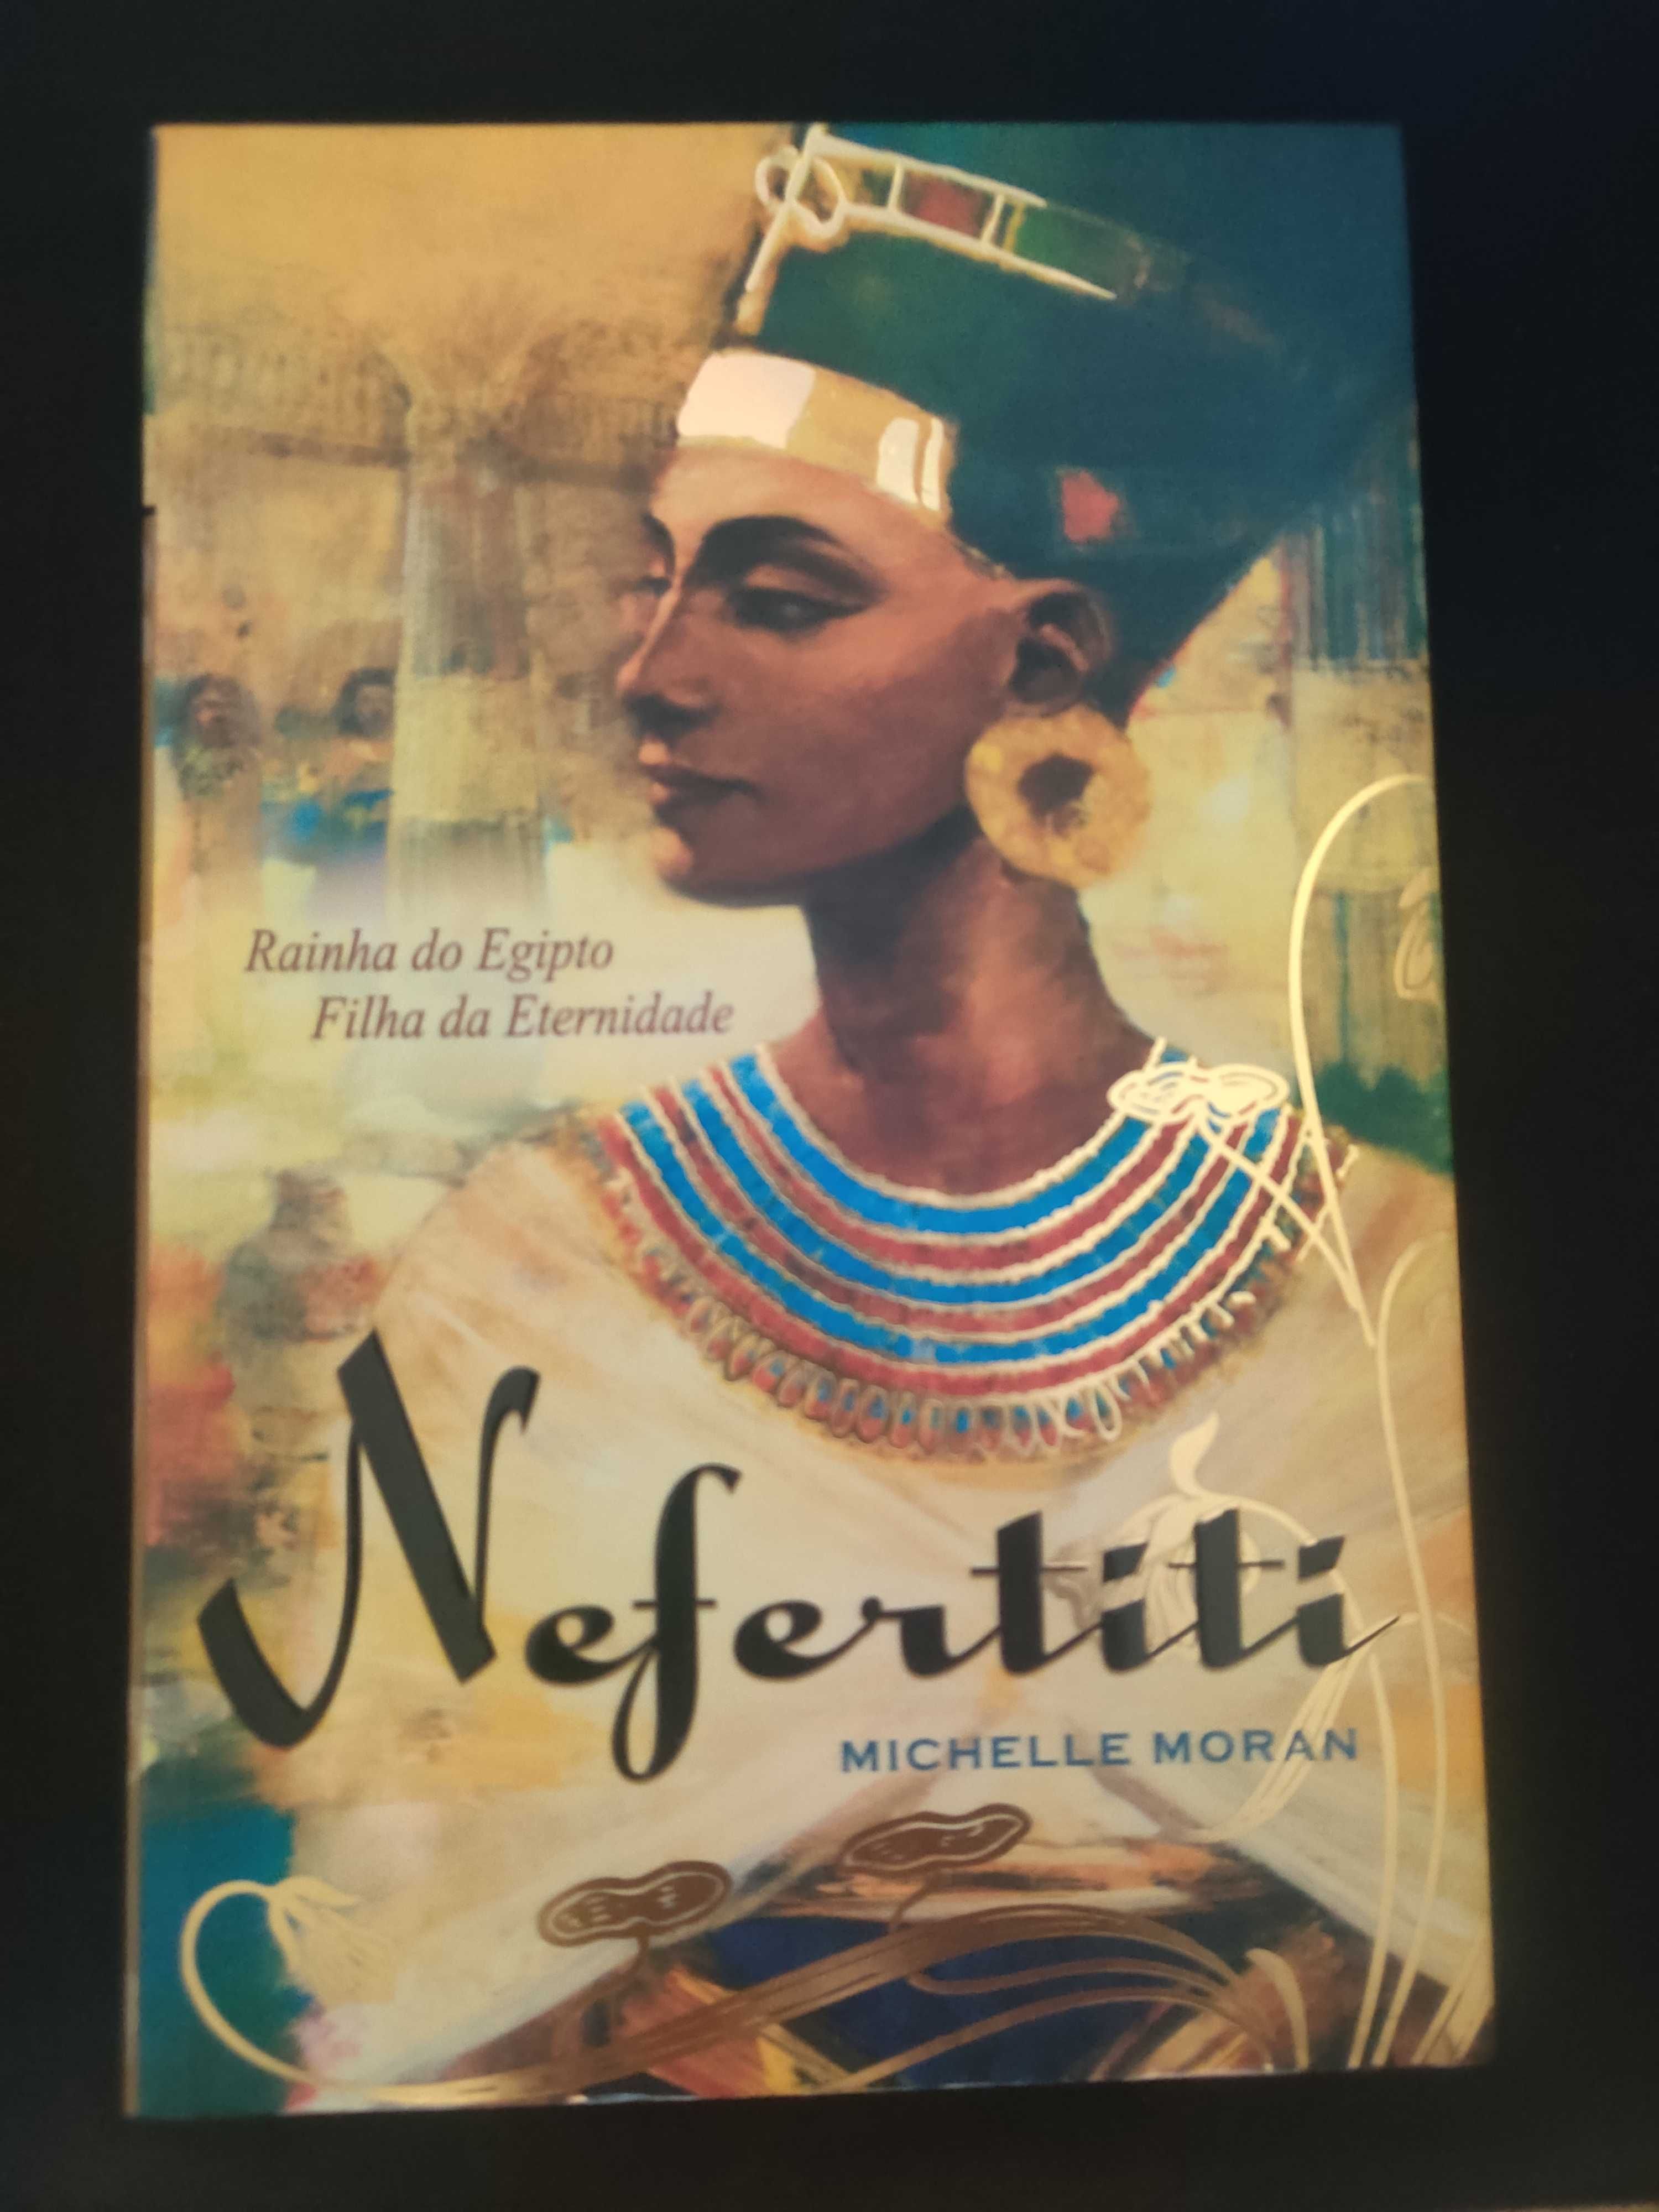 Livro "Nefertiti" - Michelle Moran